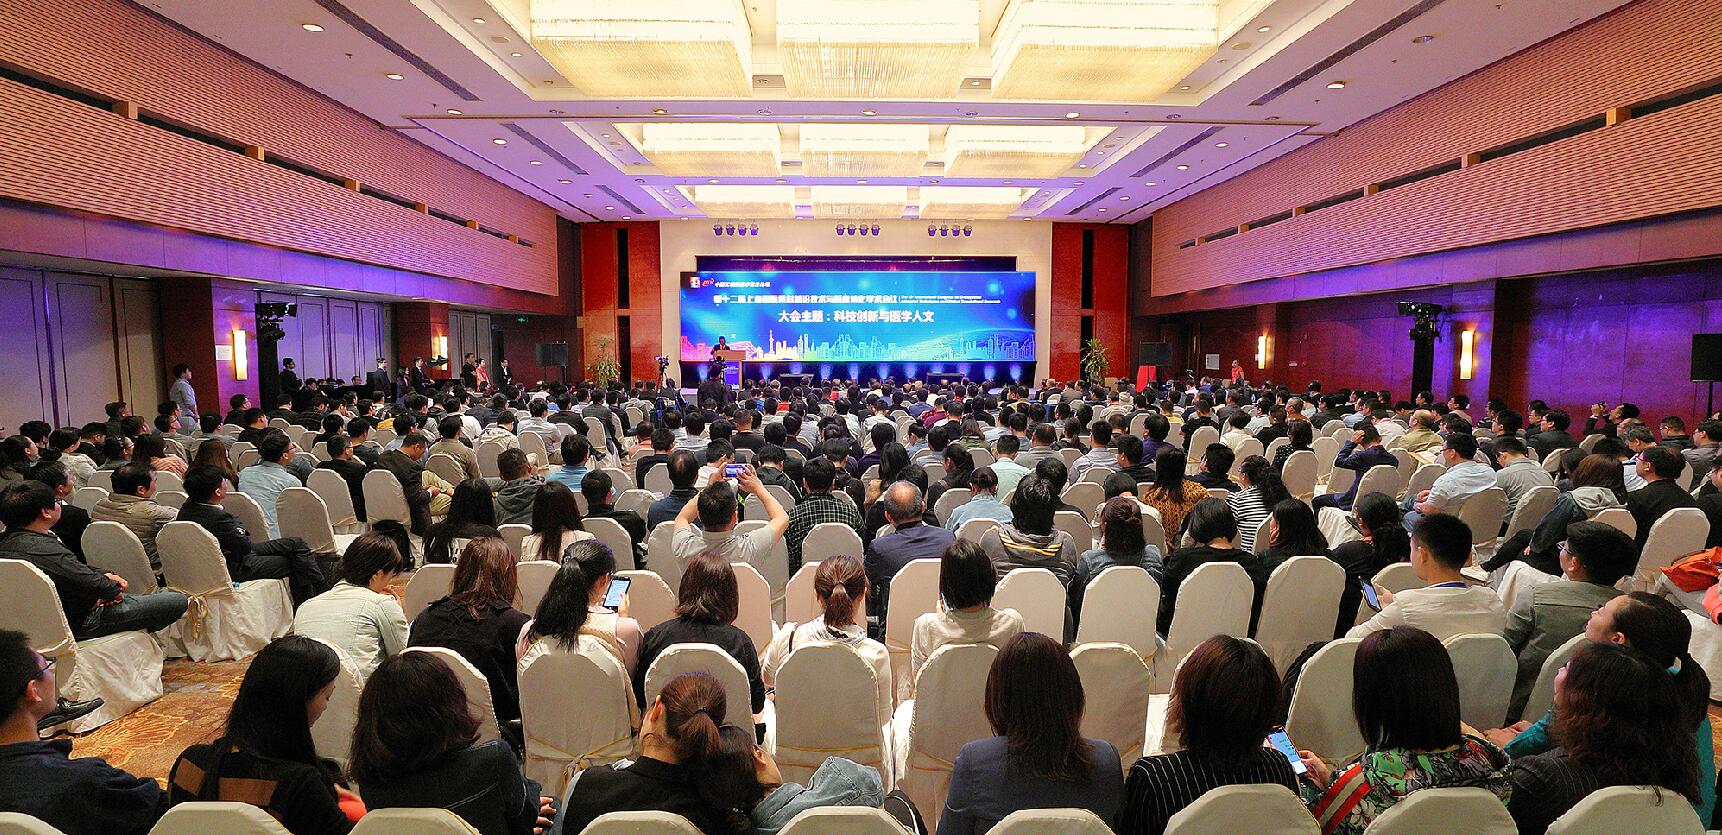 第十二届上海国际骨科前沿技术与临床转化学术会议-医疗设备及药品展览会